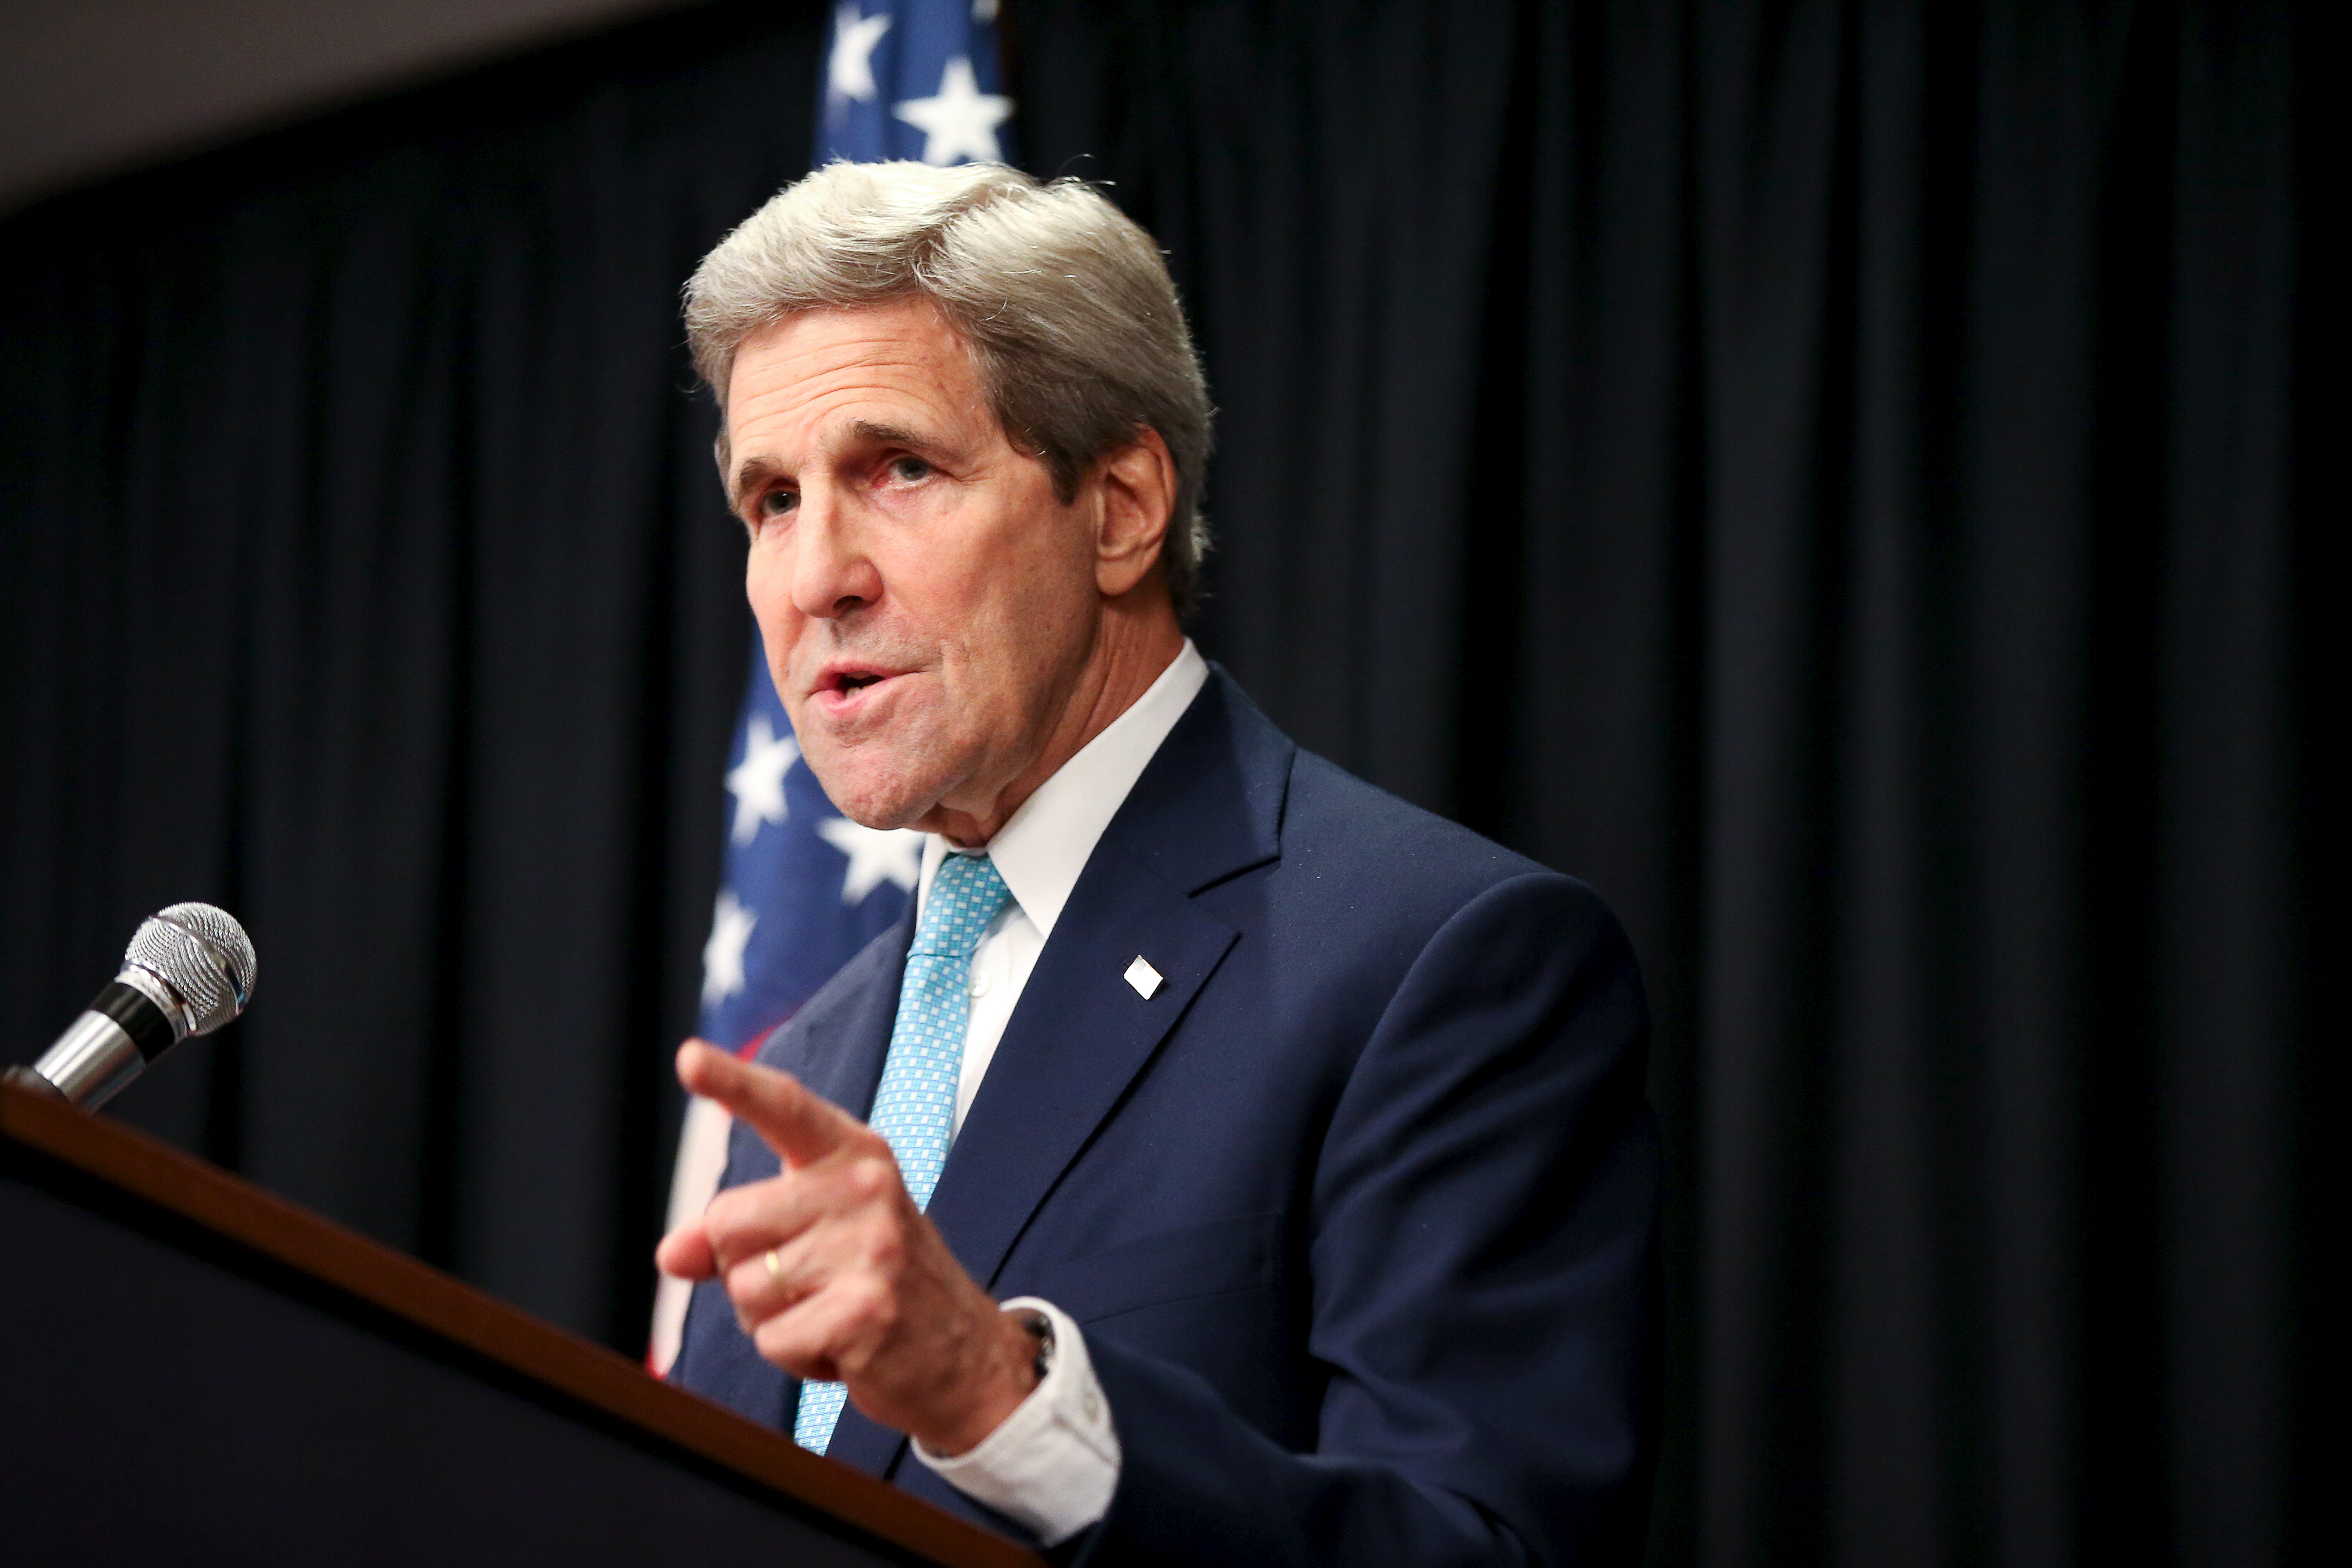 Le changement climatique menace la sécurité mondiale, selon John Kerry